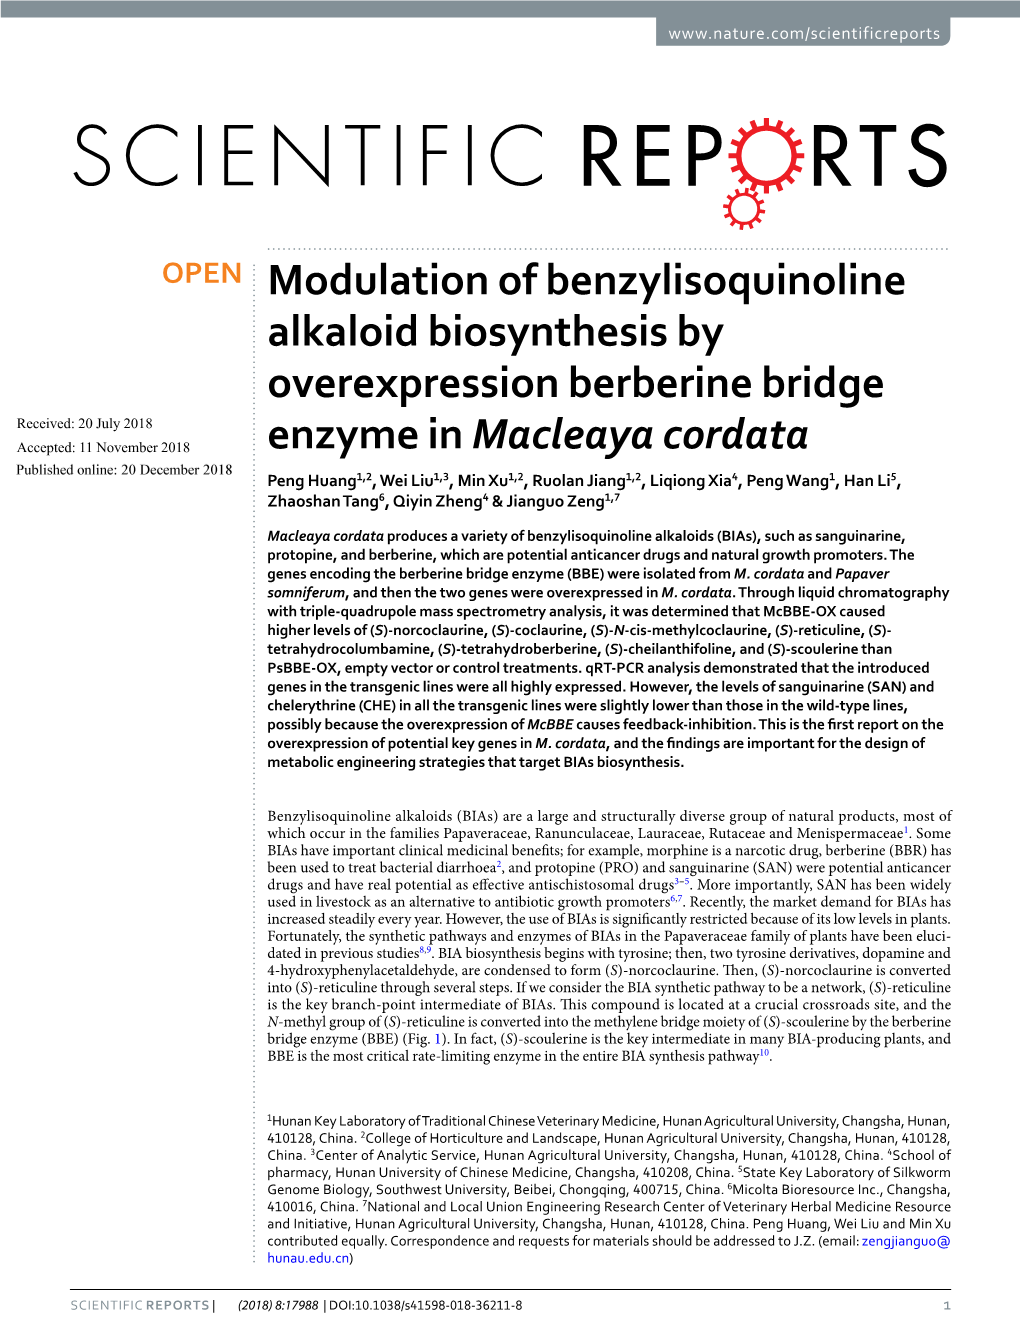 Modulation of Benzylisoquinoline Alkaloid Biosynthesis By